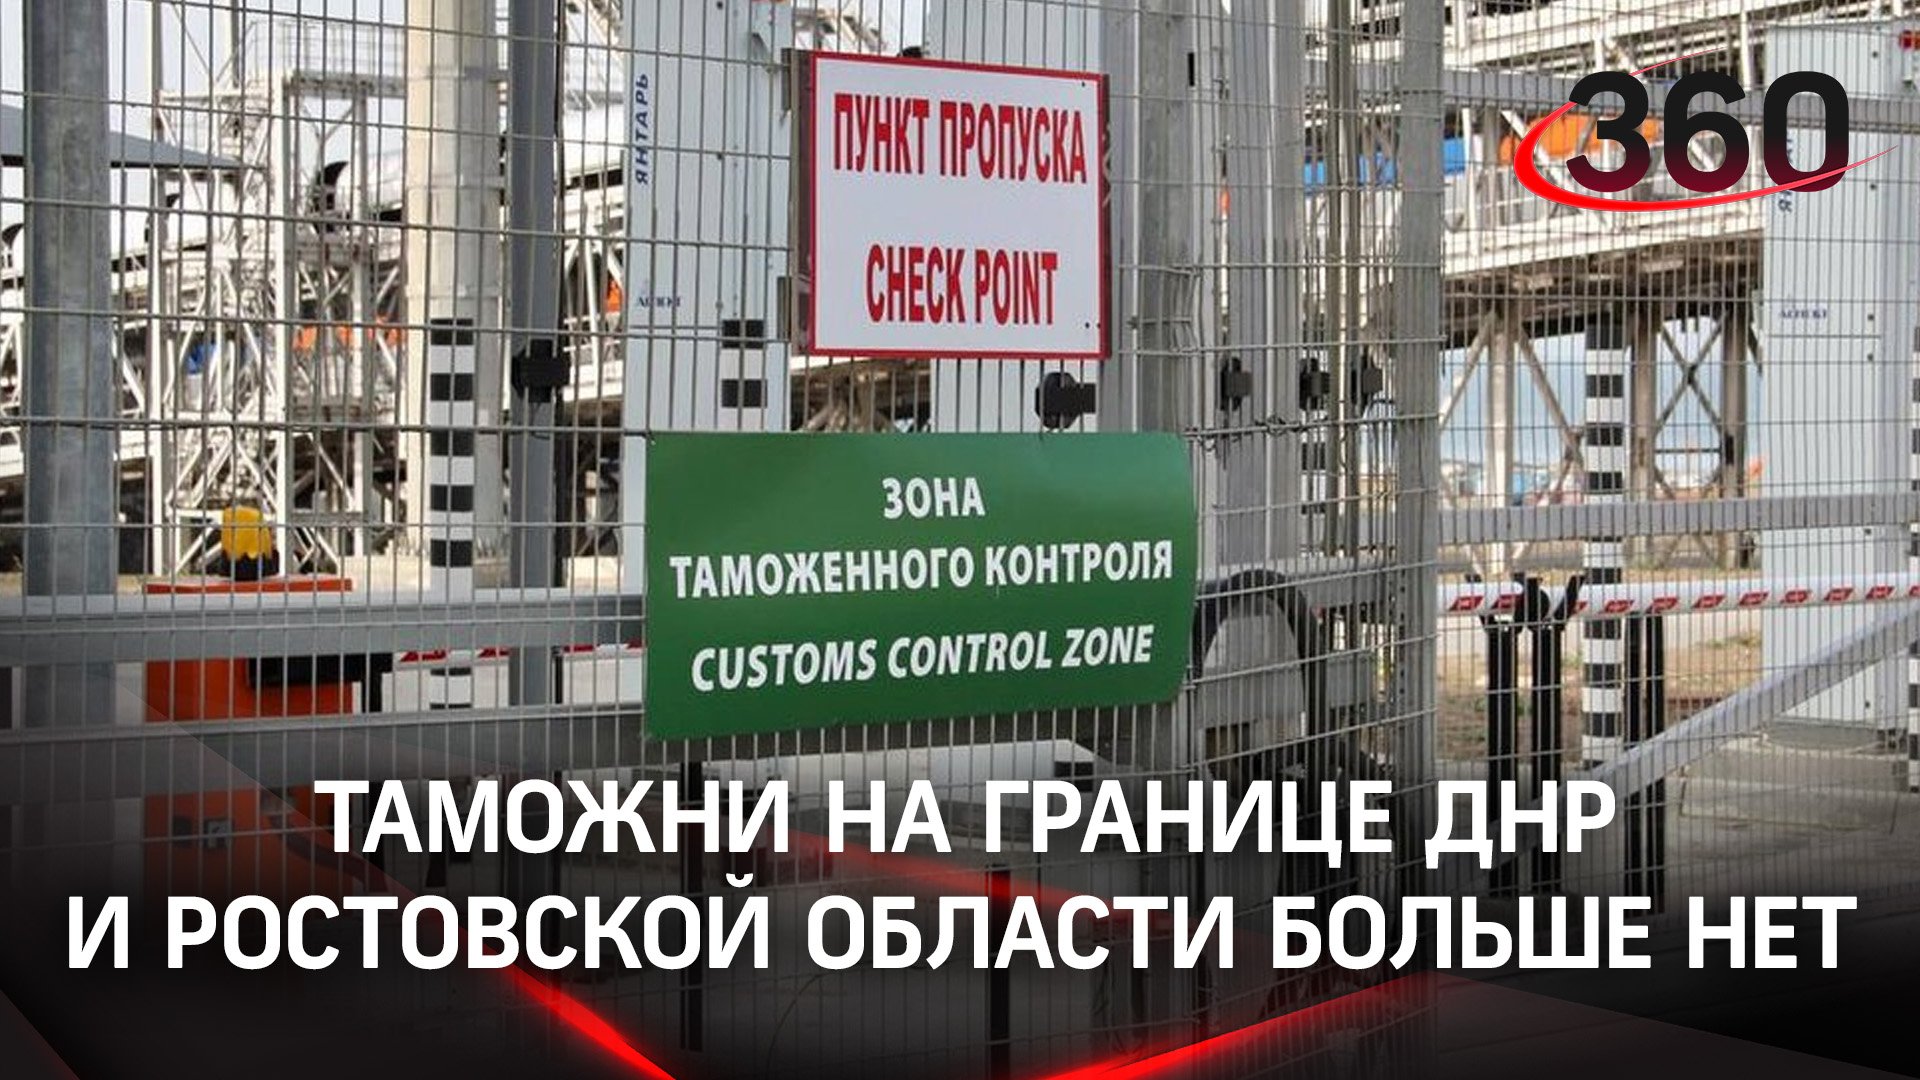 Пограничного контроля на границе ДНР и Ростовской области больше нет